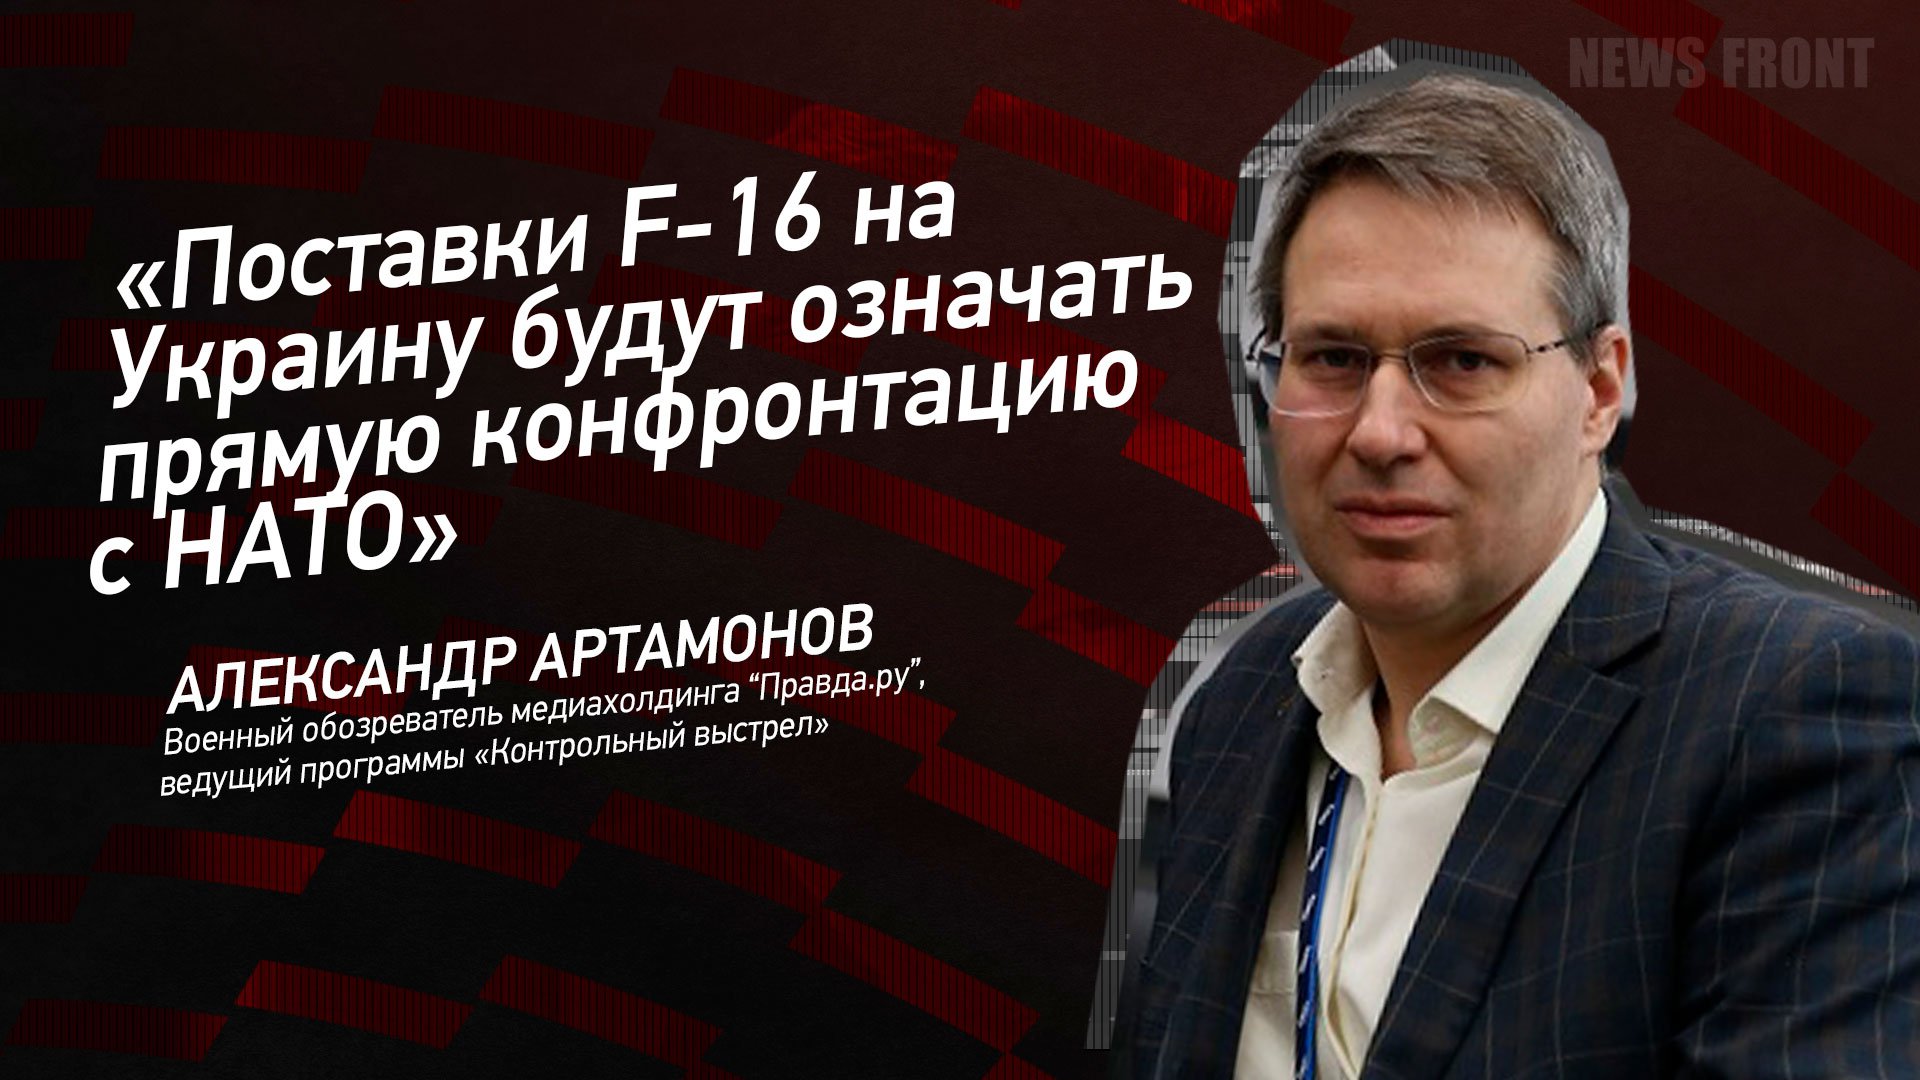 "Поставки F-16 на Украину будут означать прямую конфронтацию с НАТО" - Александр Артамонов